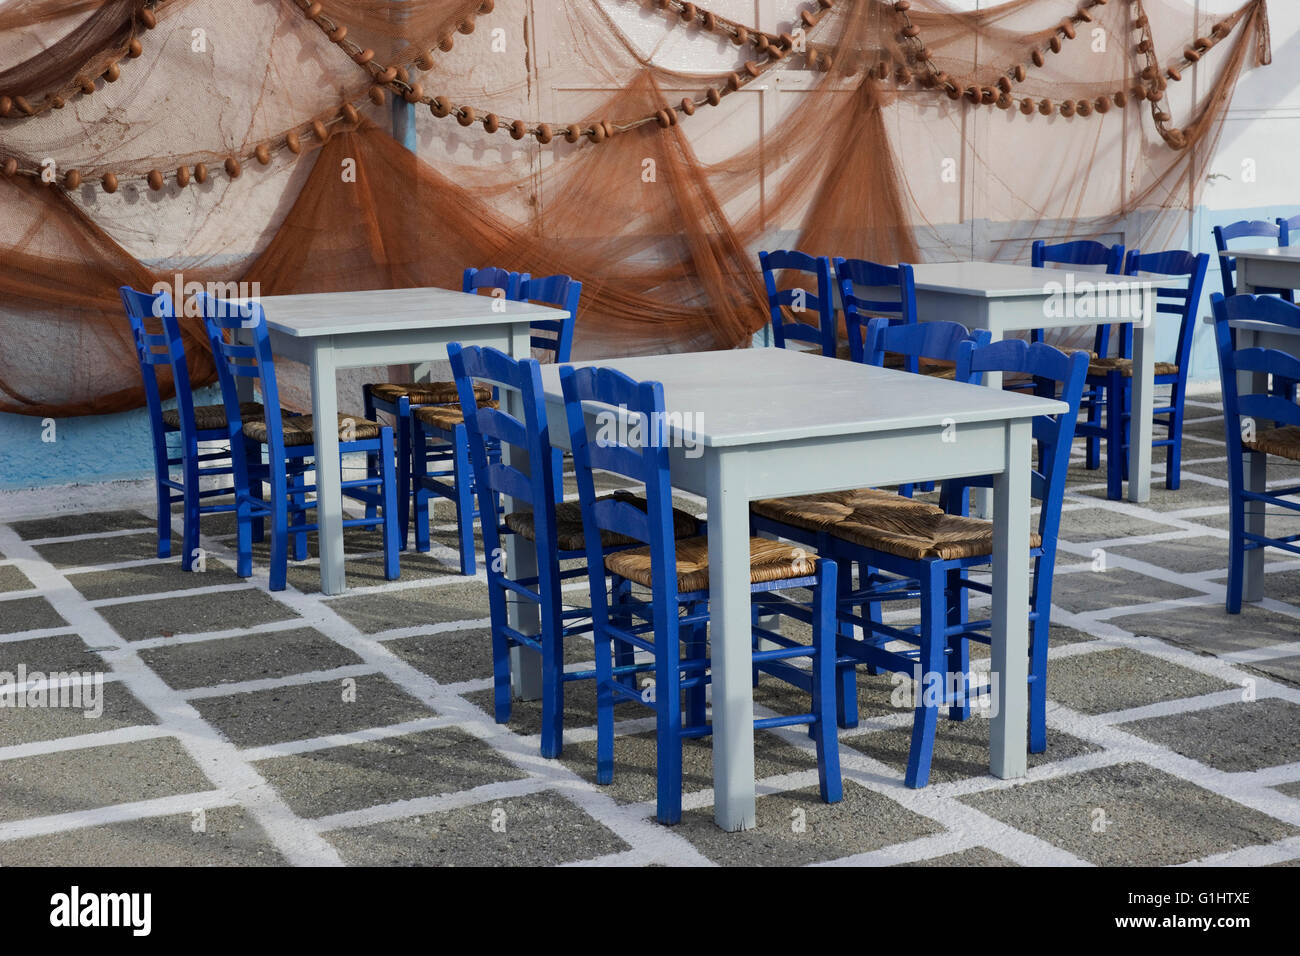 Tables vides arrangement et filets de pêche suspendus décoration murale de Glaros restaurant dans le quai de Myrina, Lemnos, Grèce Banque D'Images